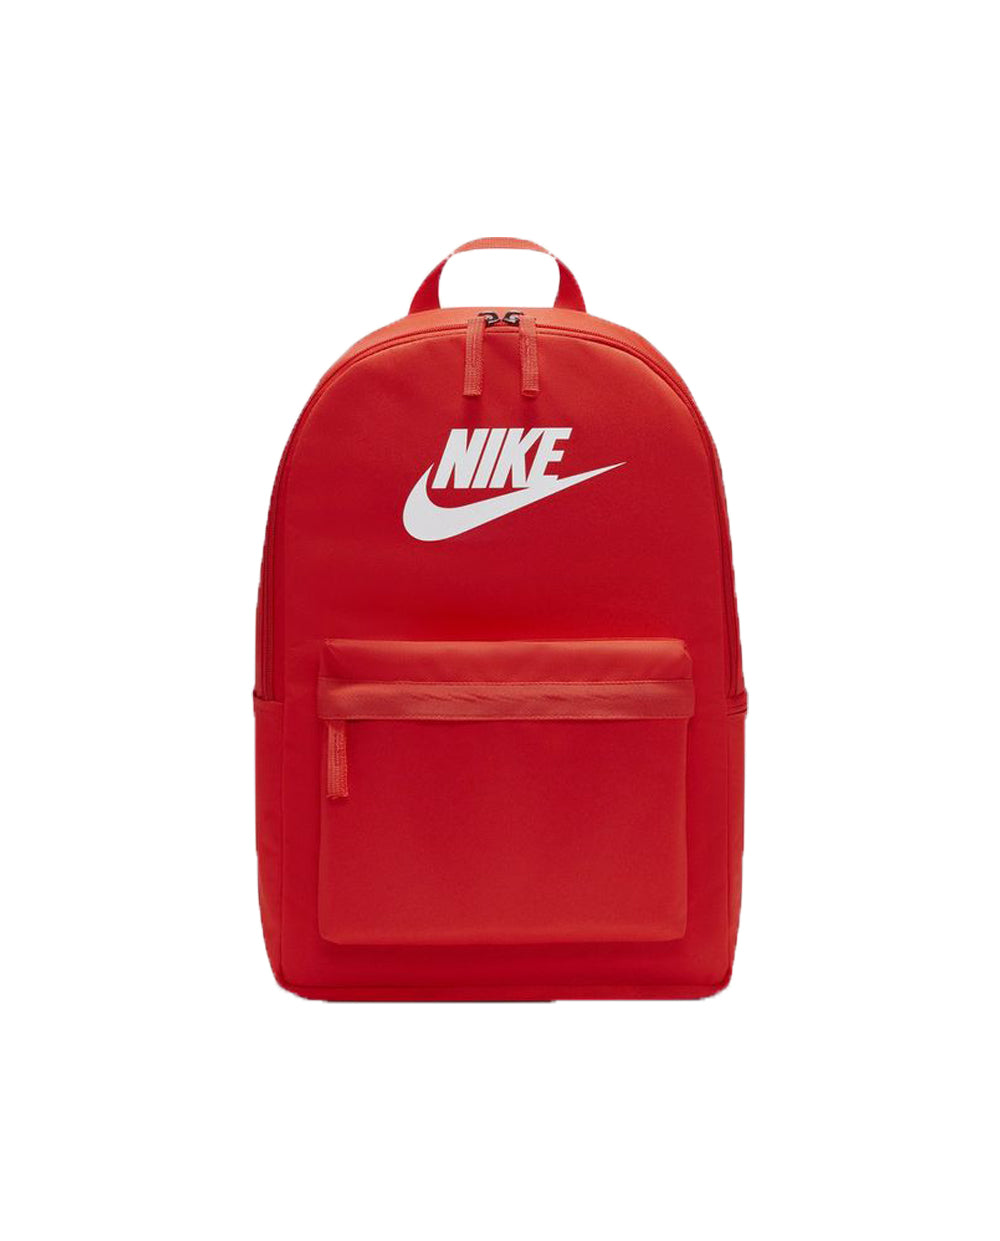 Mochila Nike Vermelha com Branco